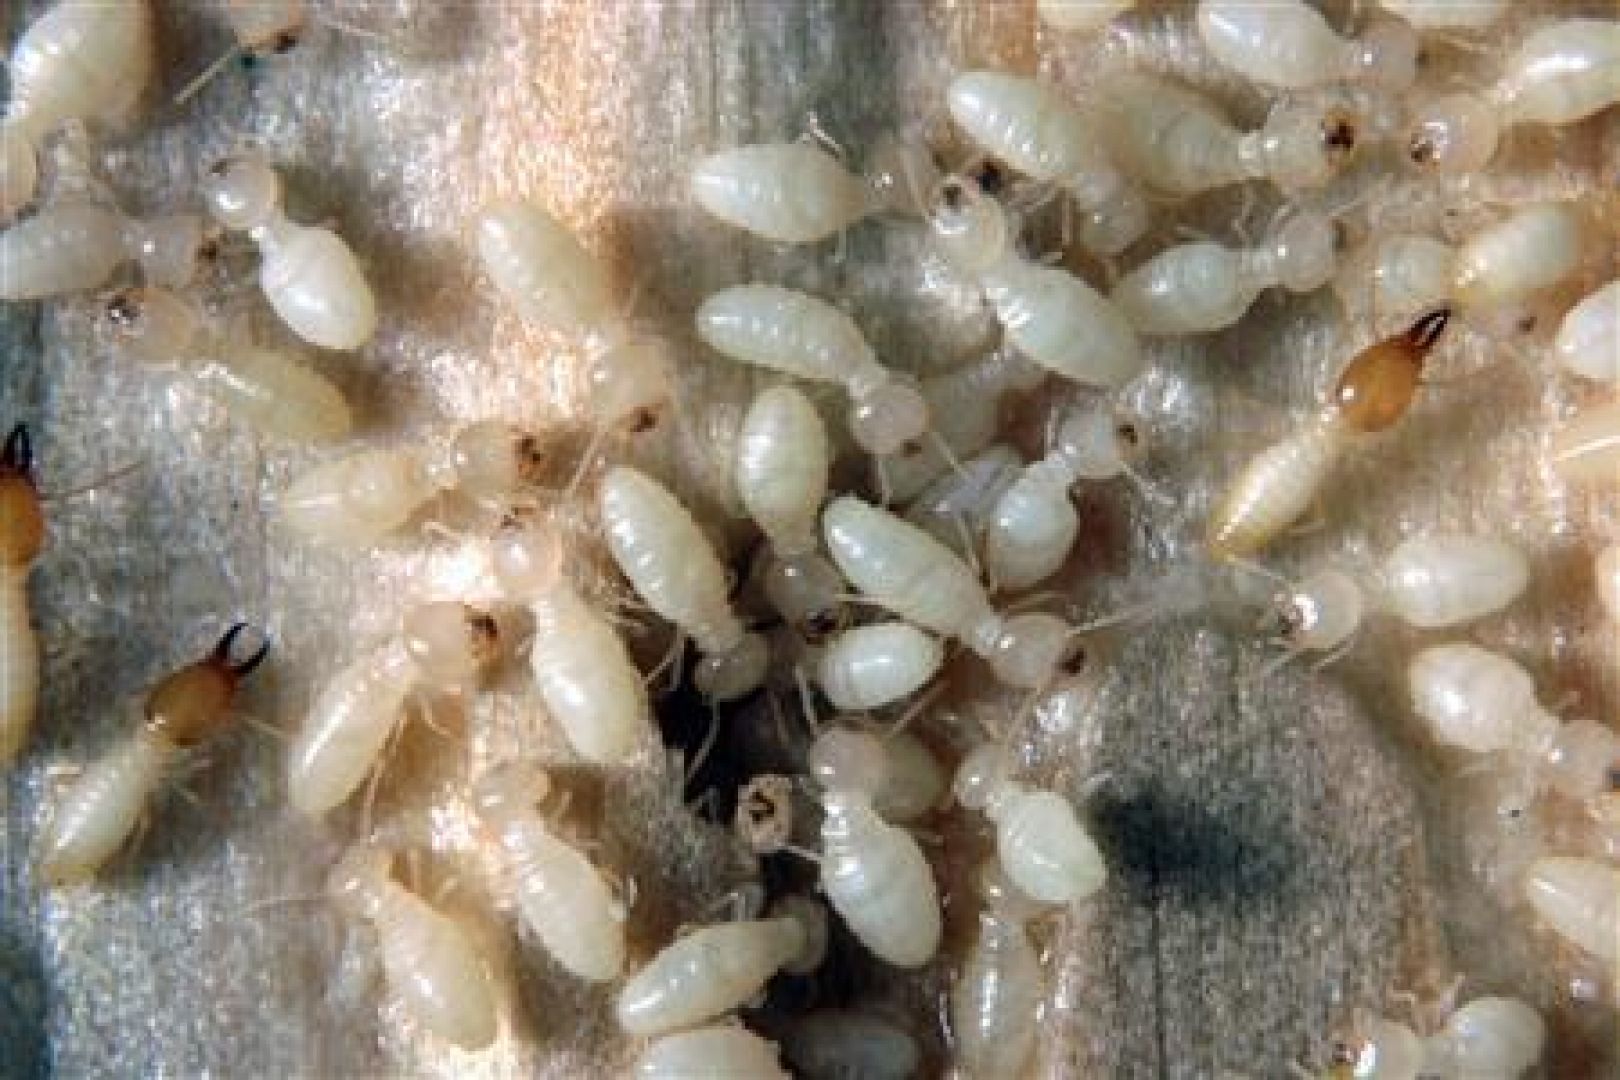 Pictures Of Subterranean Termites